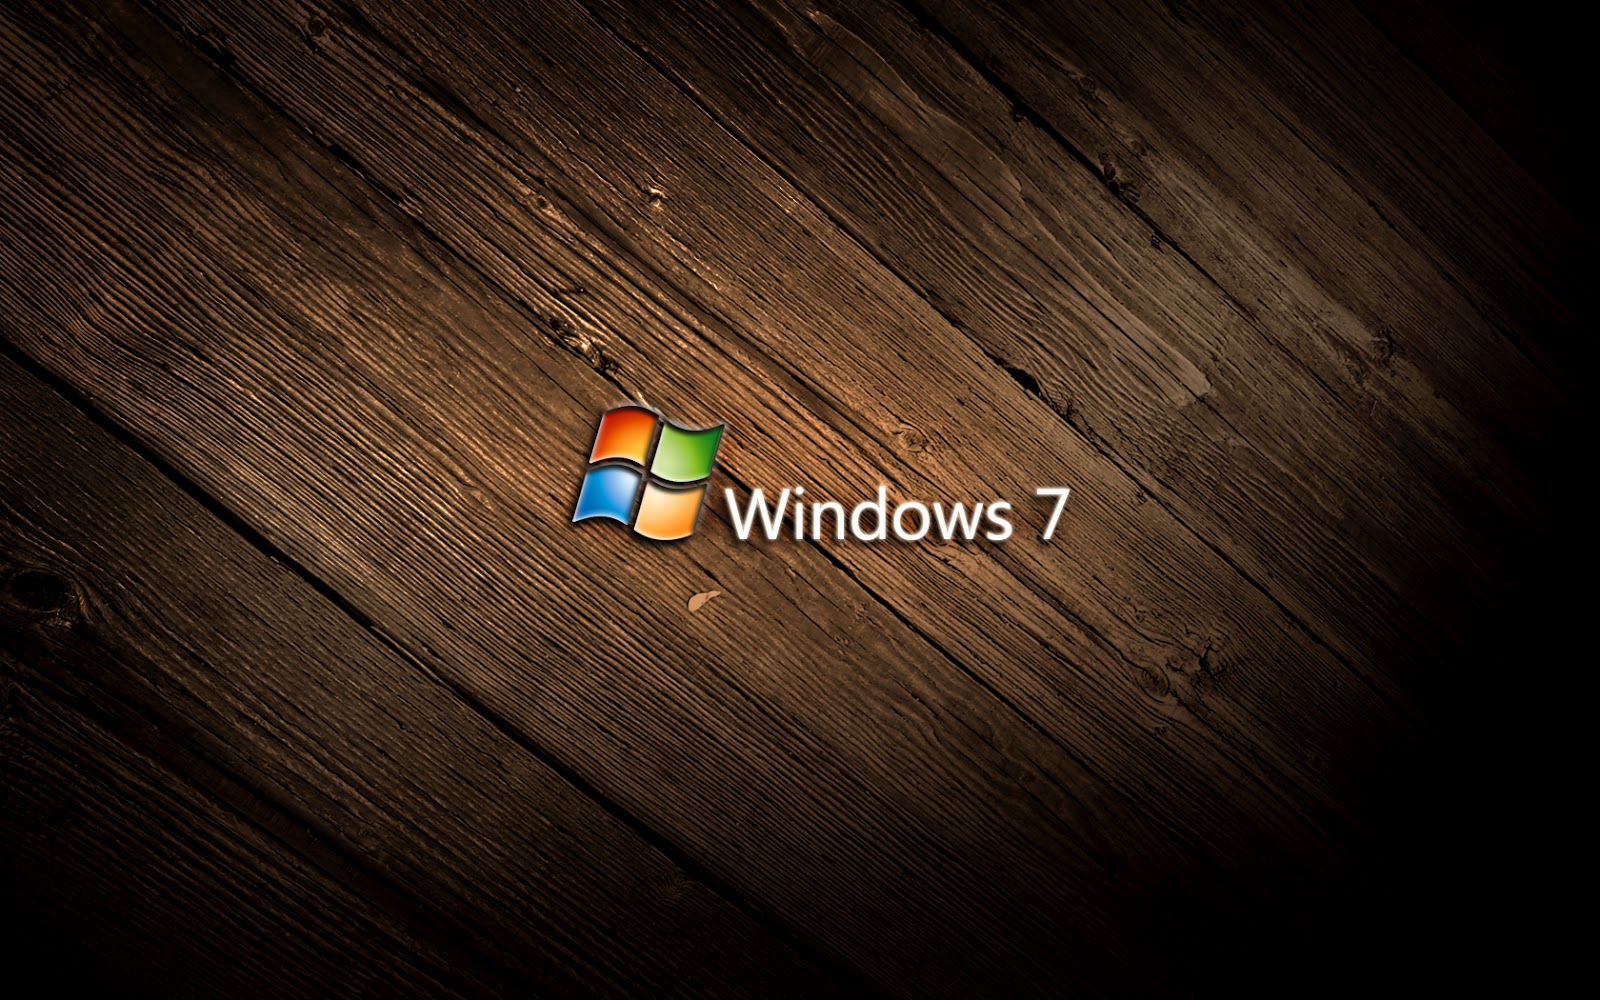 Windows 7 HD Wallpaper làm tôn lên vẻ đẹp và sự tinh tế cho màn hình máy tính của bạn. Tận hưởng các bức ảnh được thiết kế chuyên nghiệp và sắc nét, tạo ra trải nghiệm tuyệt vời cho mắt và tinh thần của bạn.